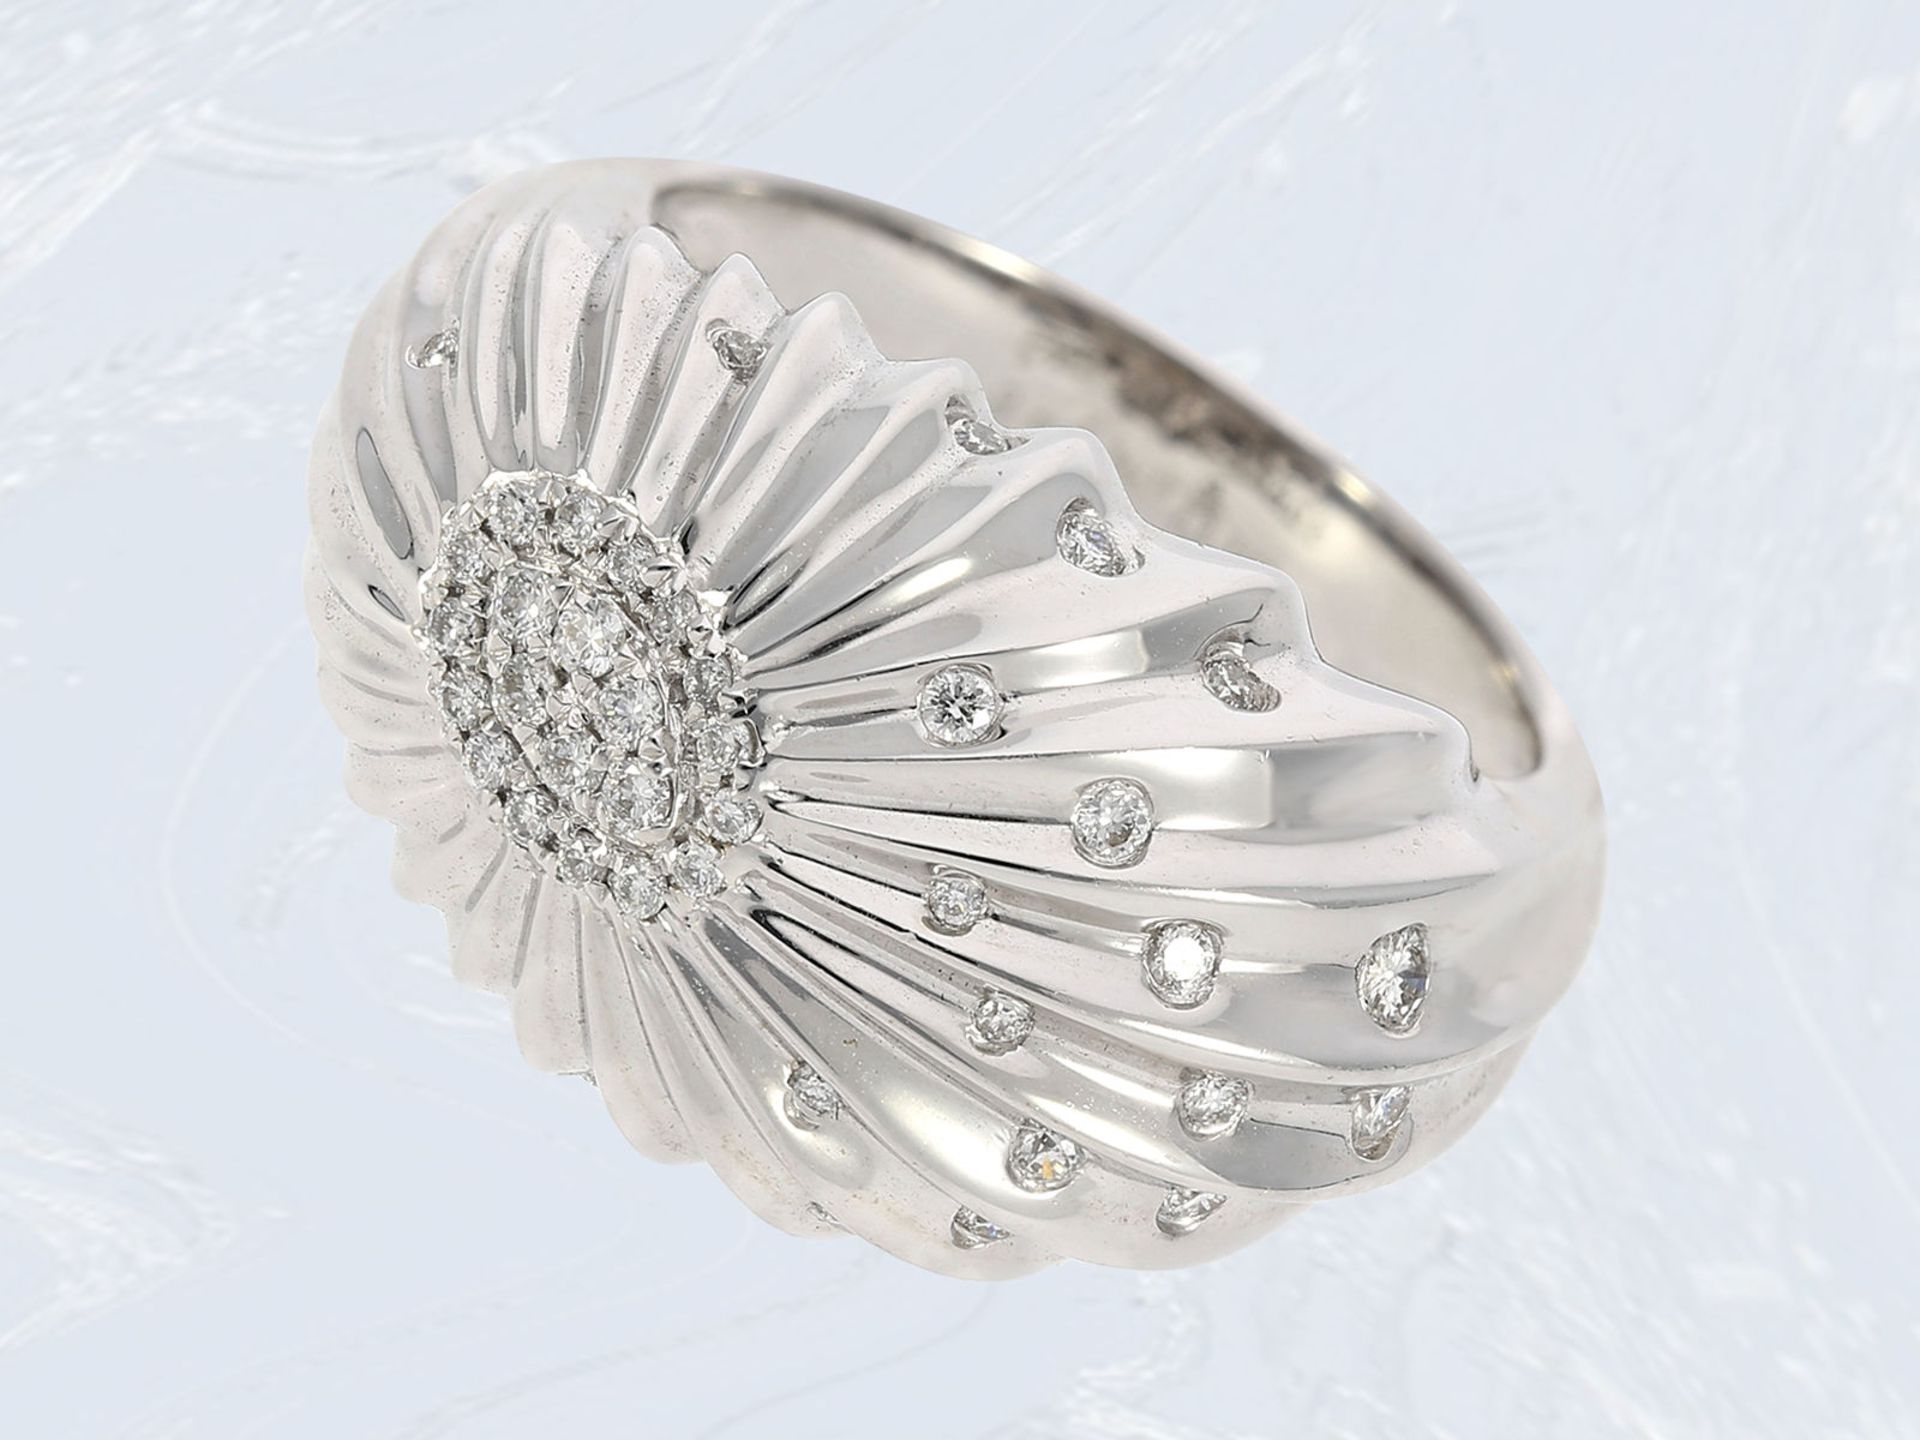 Ring: Weißgoldring in fantasievollem Design mit Brillantbesatz, ca. 0,13ct, 18K Gold, feiner